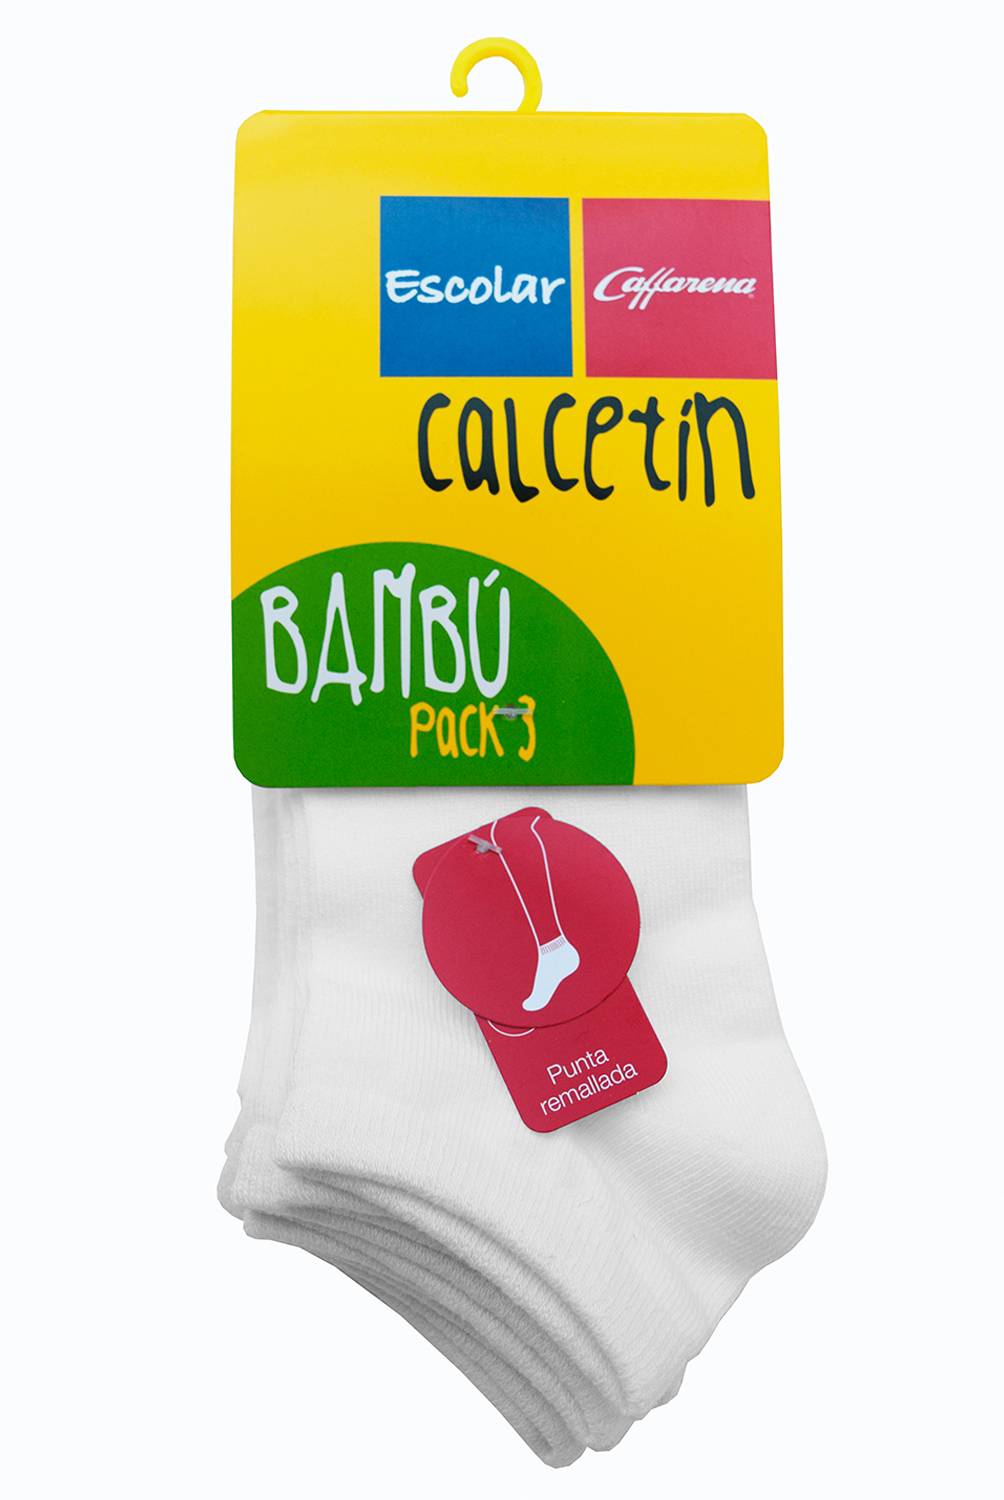  - Calcetín Tobillo Pack 3 Bambú